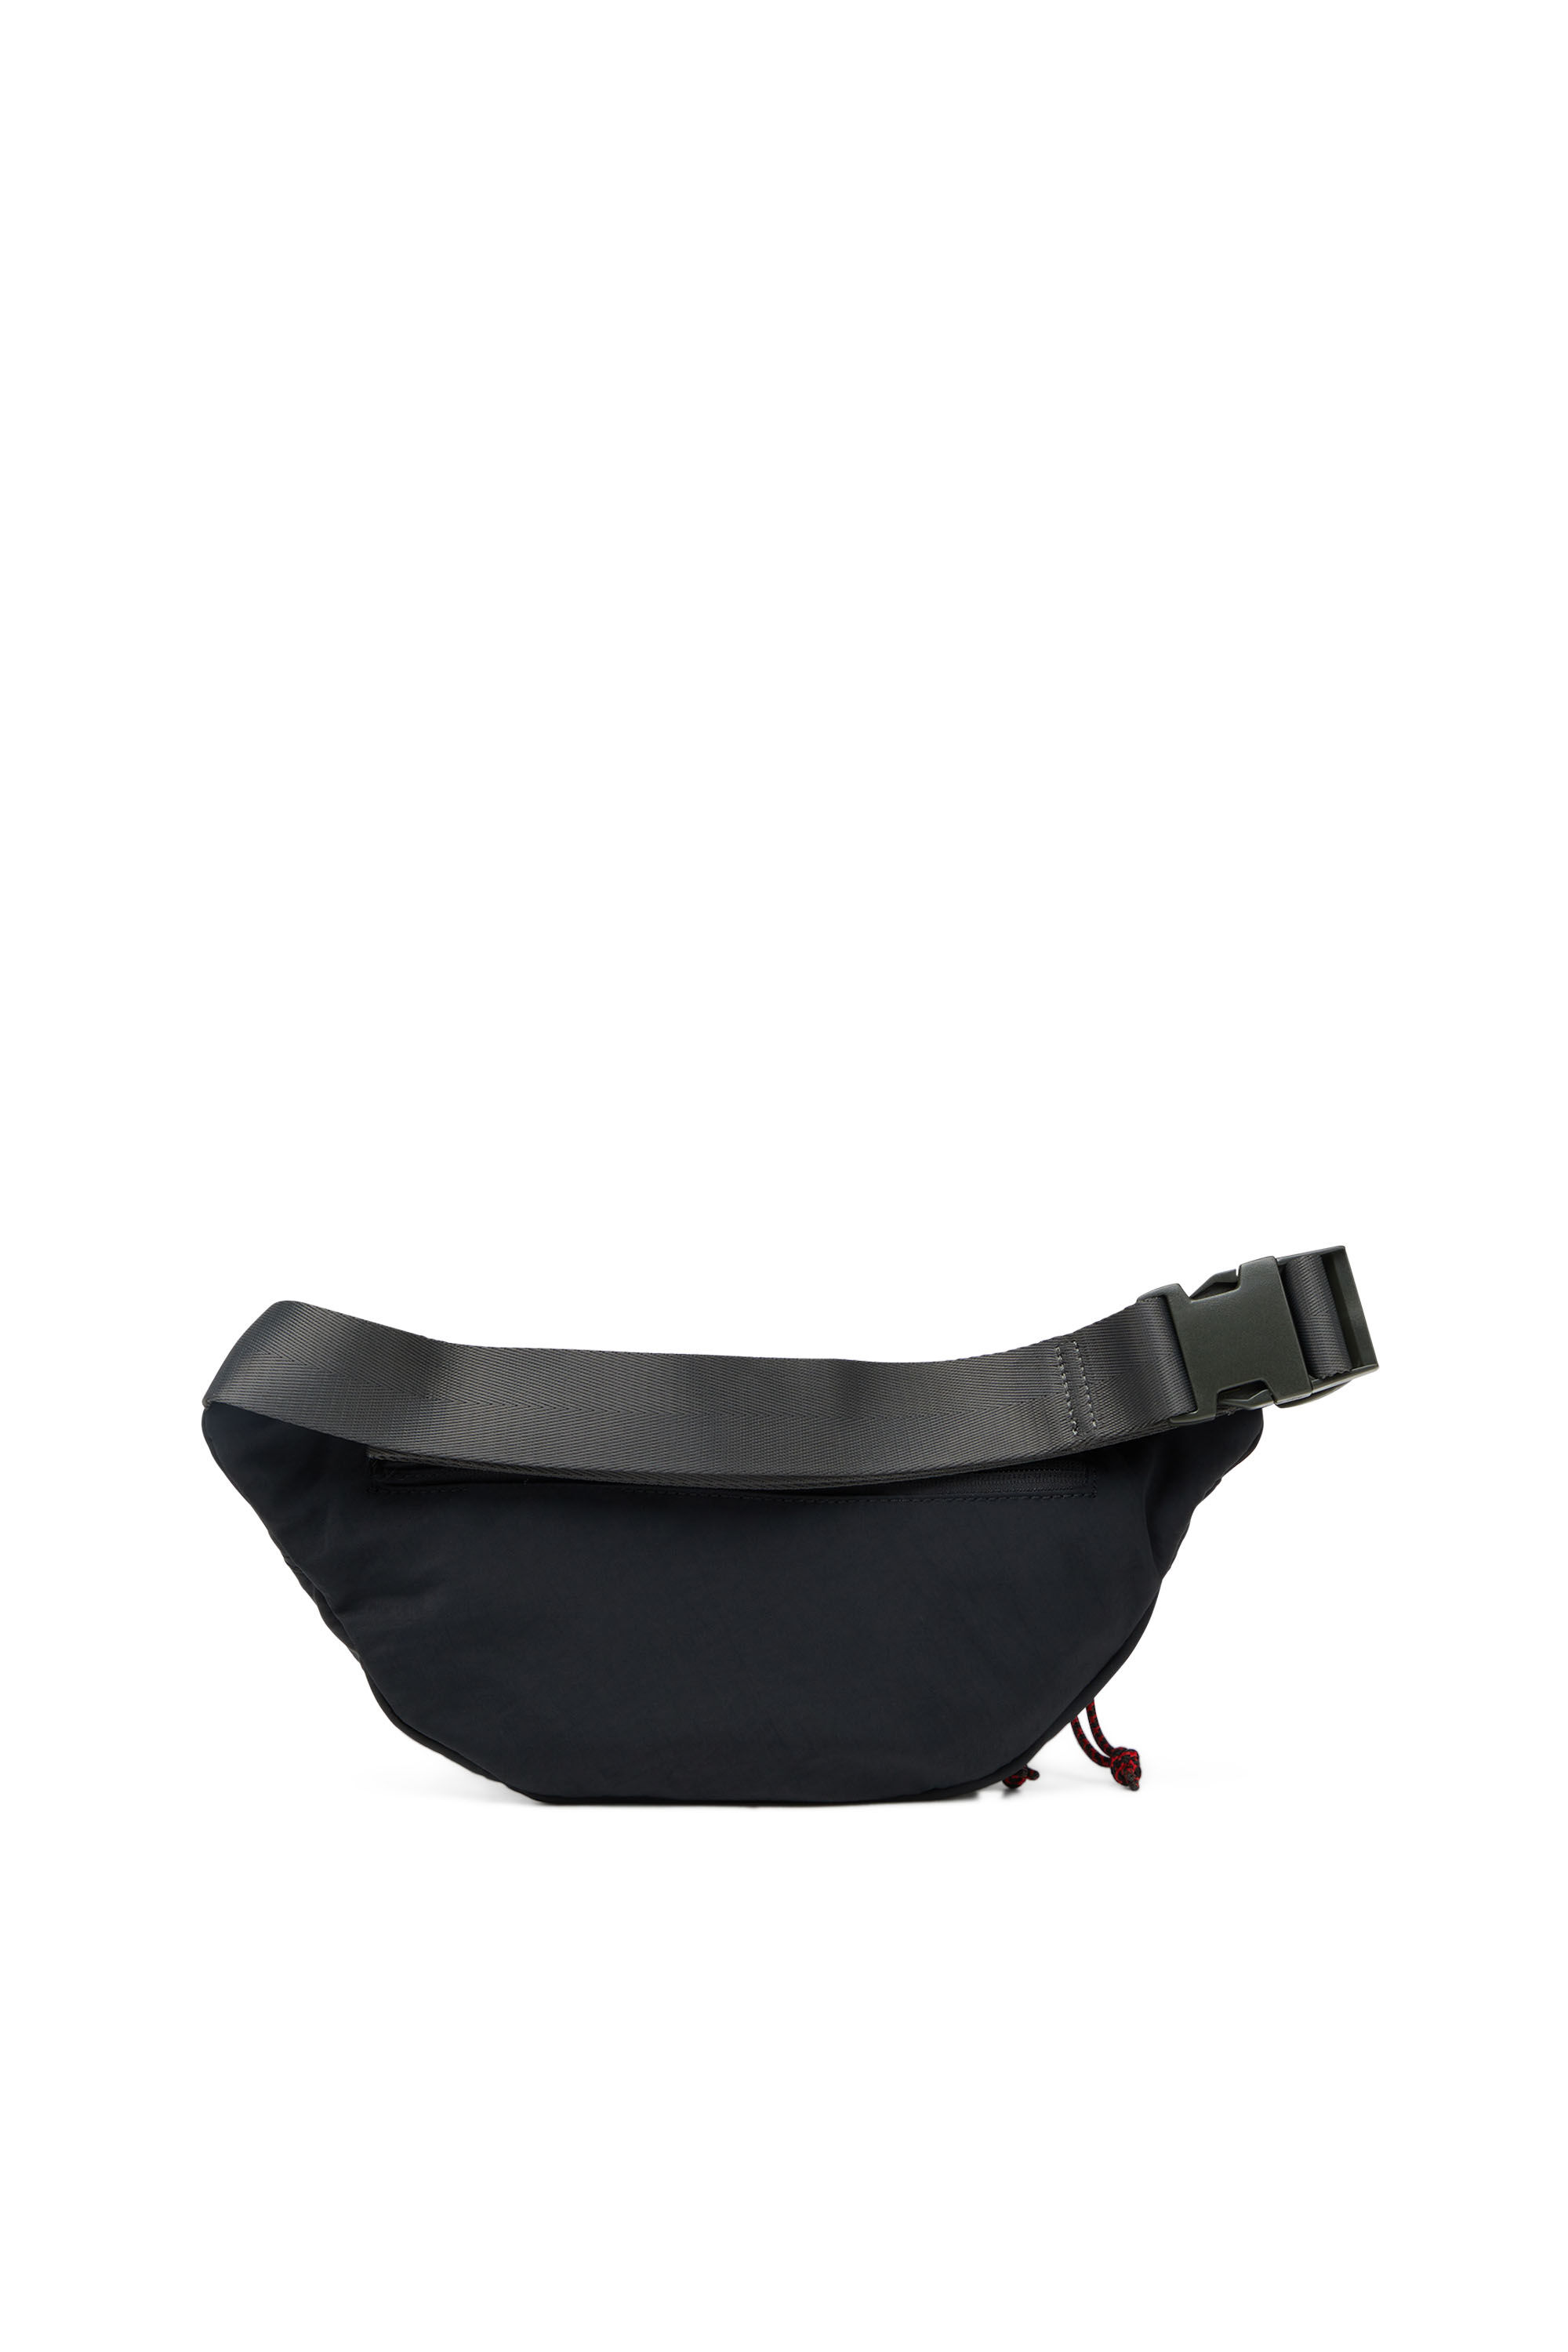 Puffer Belt Bag - Backwards Saddle Boutique